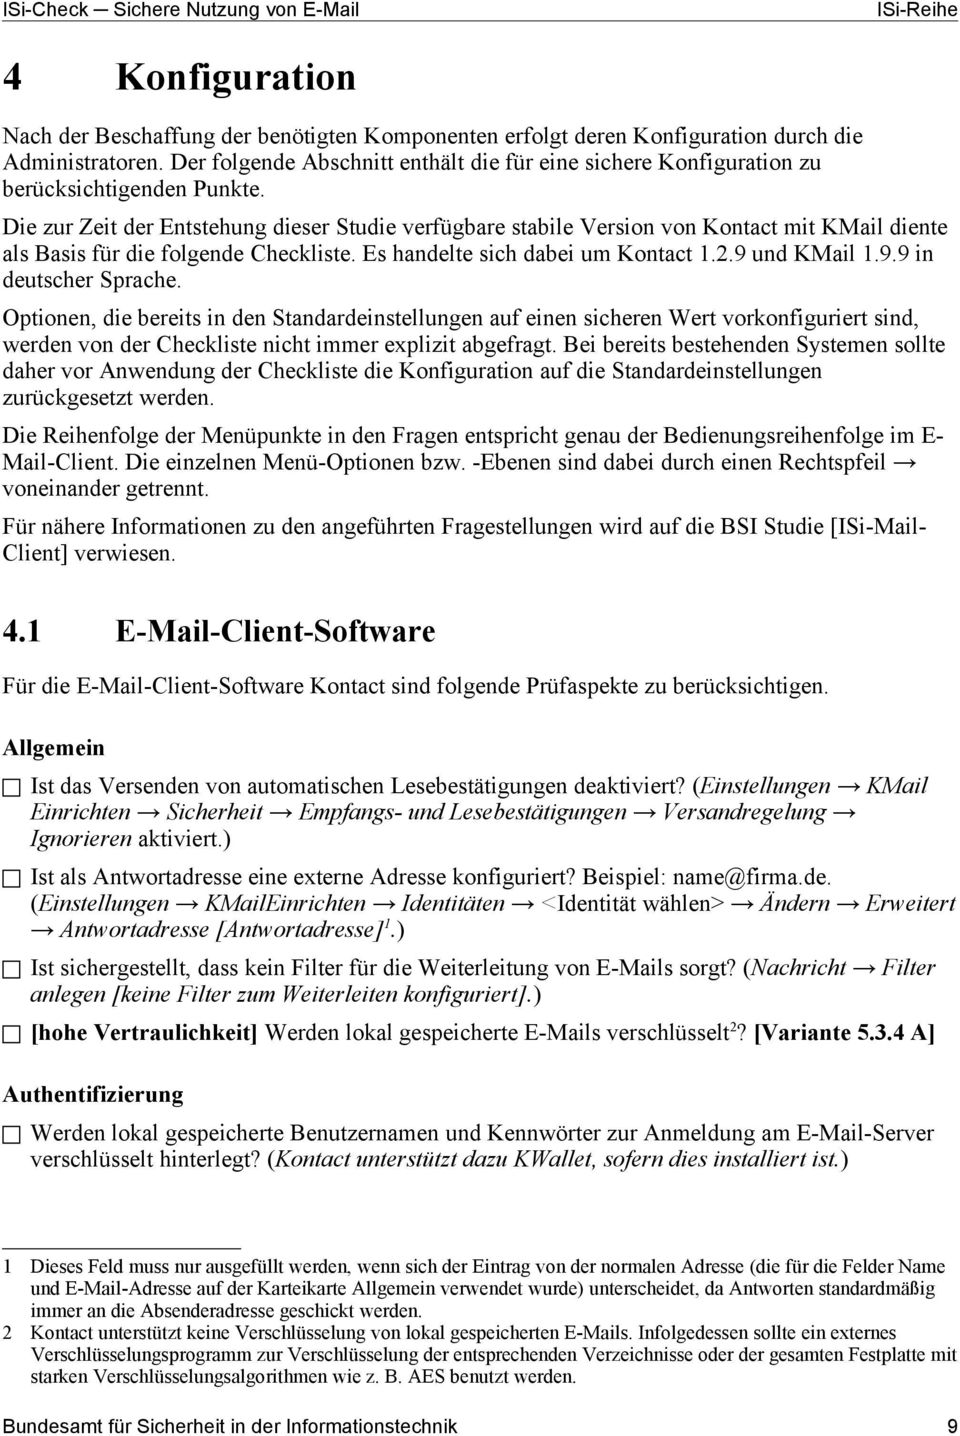 Die zur Zeit der Entstehung dieser Studie verfügbare stabile Version von Kontact mit KMail diente als Basis für die folgende Checkliste. Es handelte sich dabei um Kontact 1.2.9 und KMail 1.9.9 in deutscher Sprache.